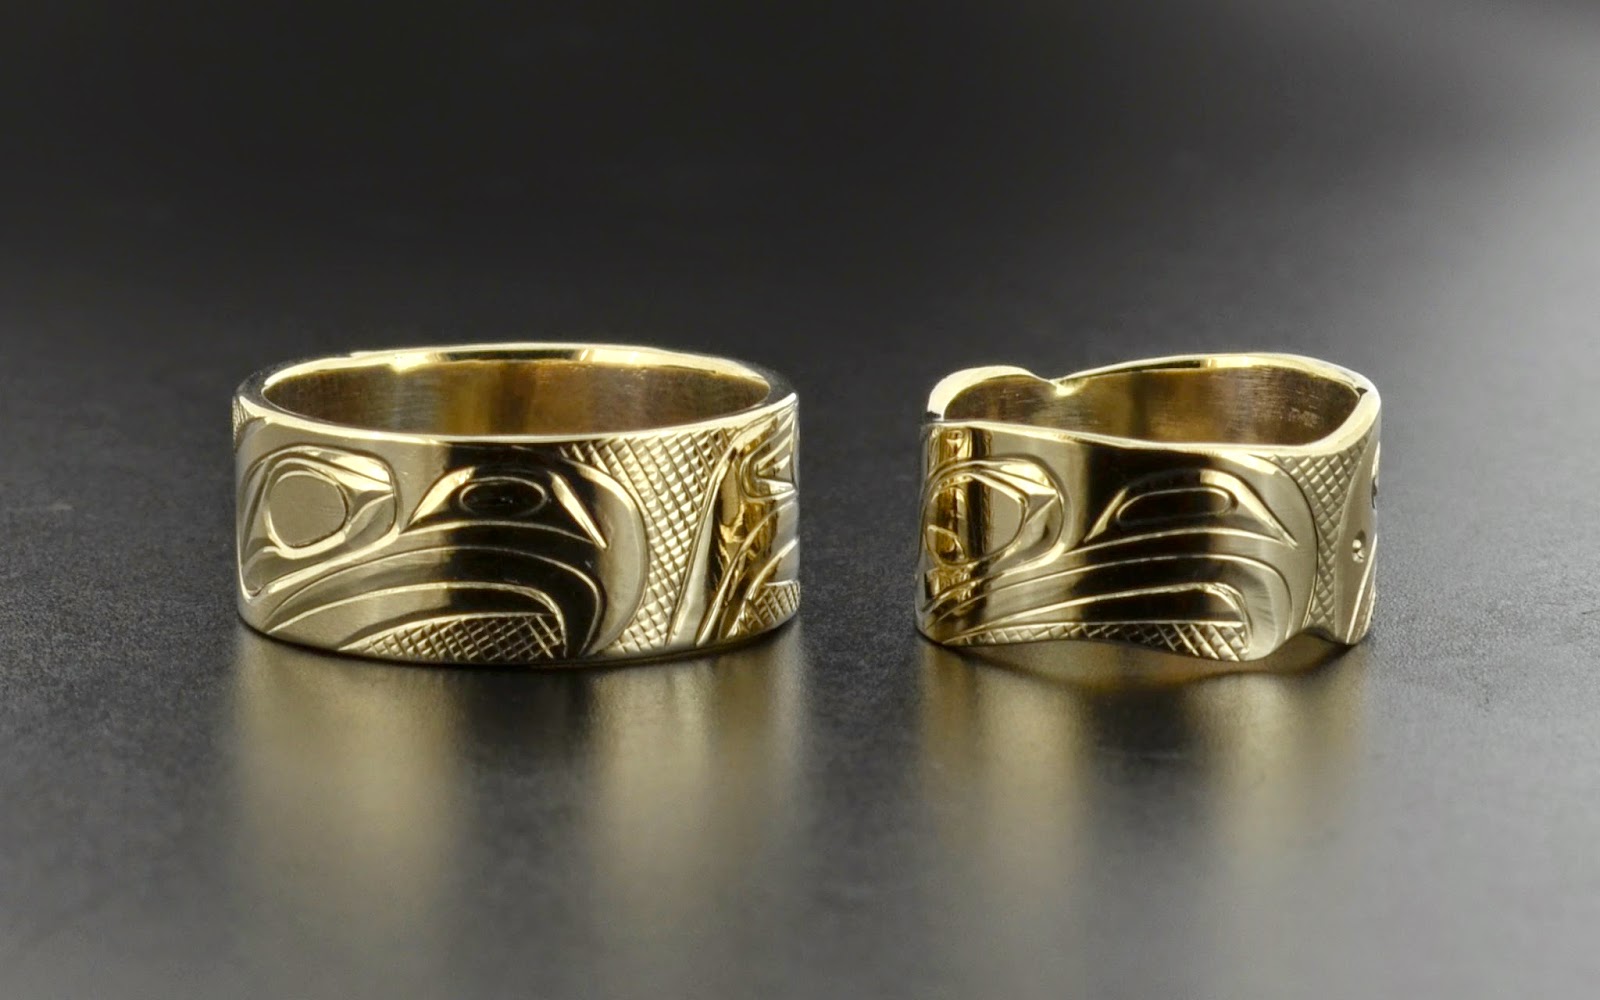 Inuit wedding rings